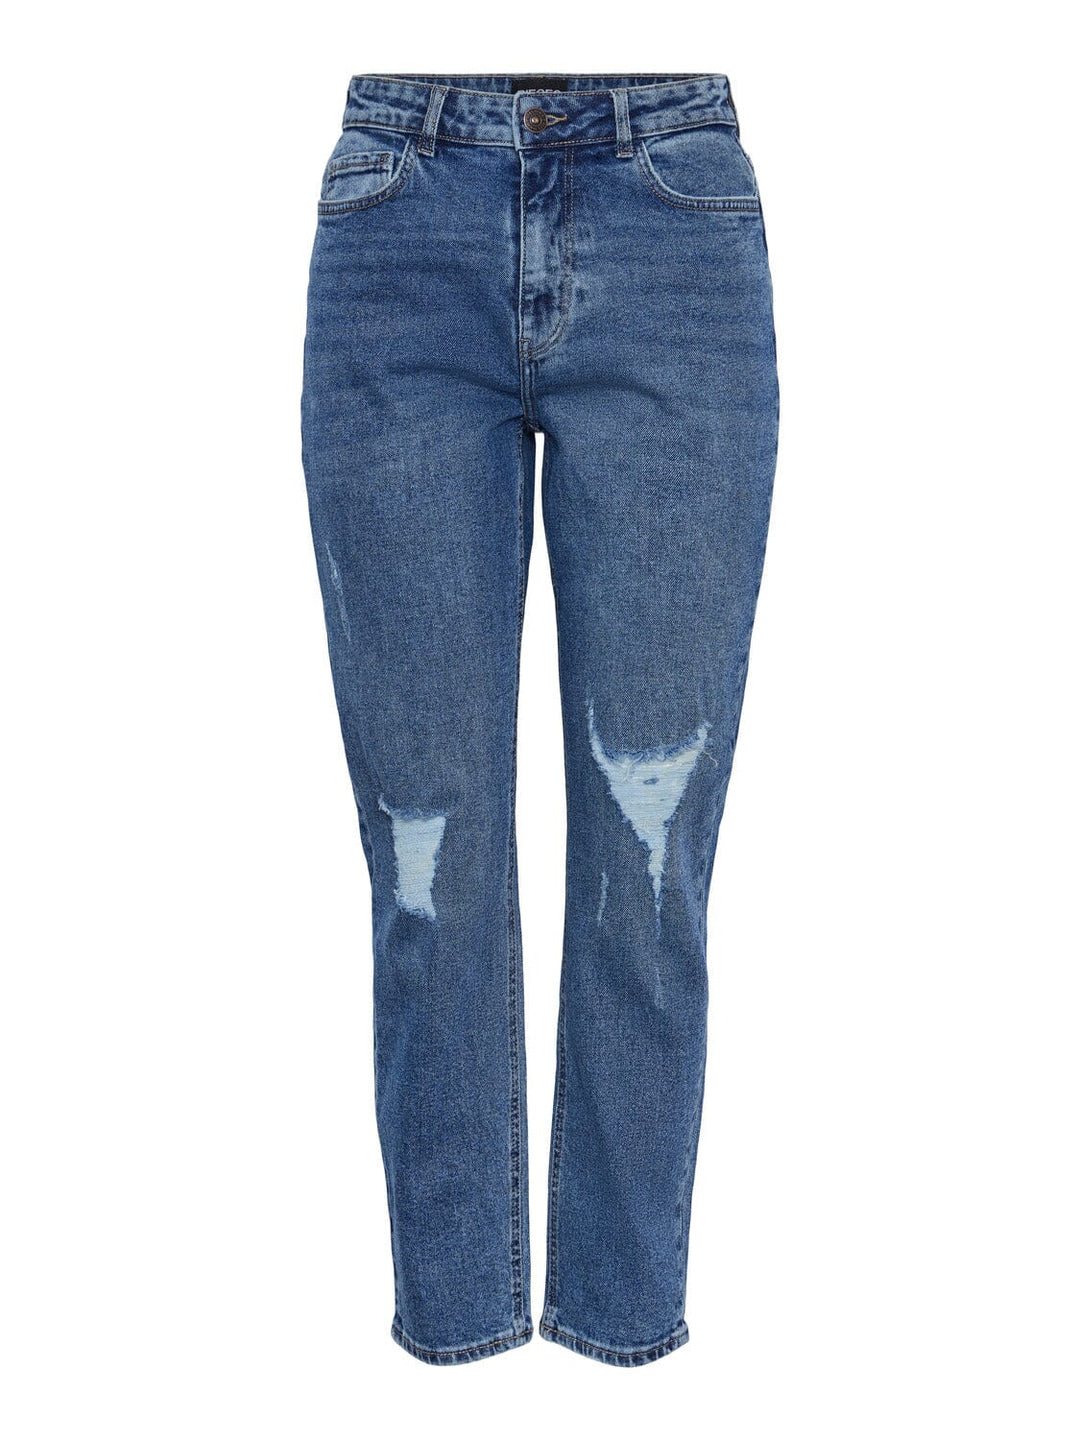 Pieces X Ditte Estrup, Pcbella Hw Tapst Ank Jeans Mb406, Medium Blue Denim